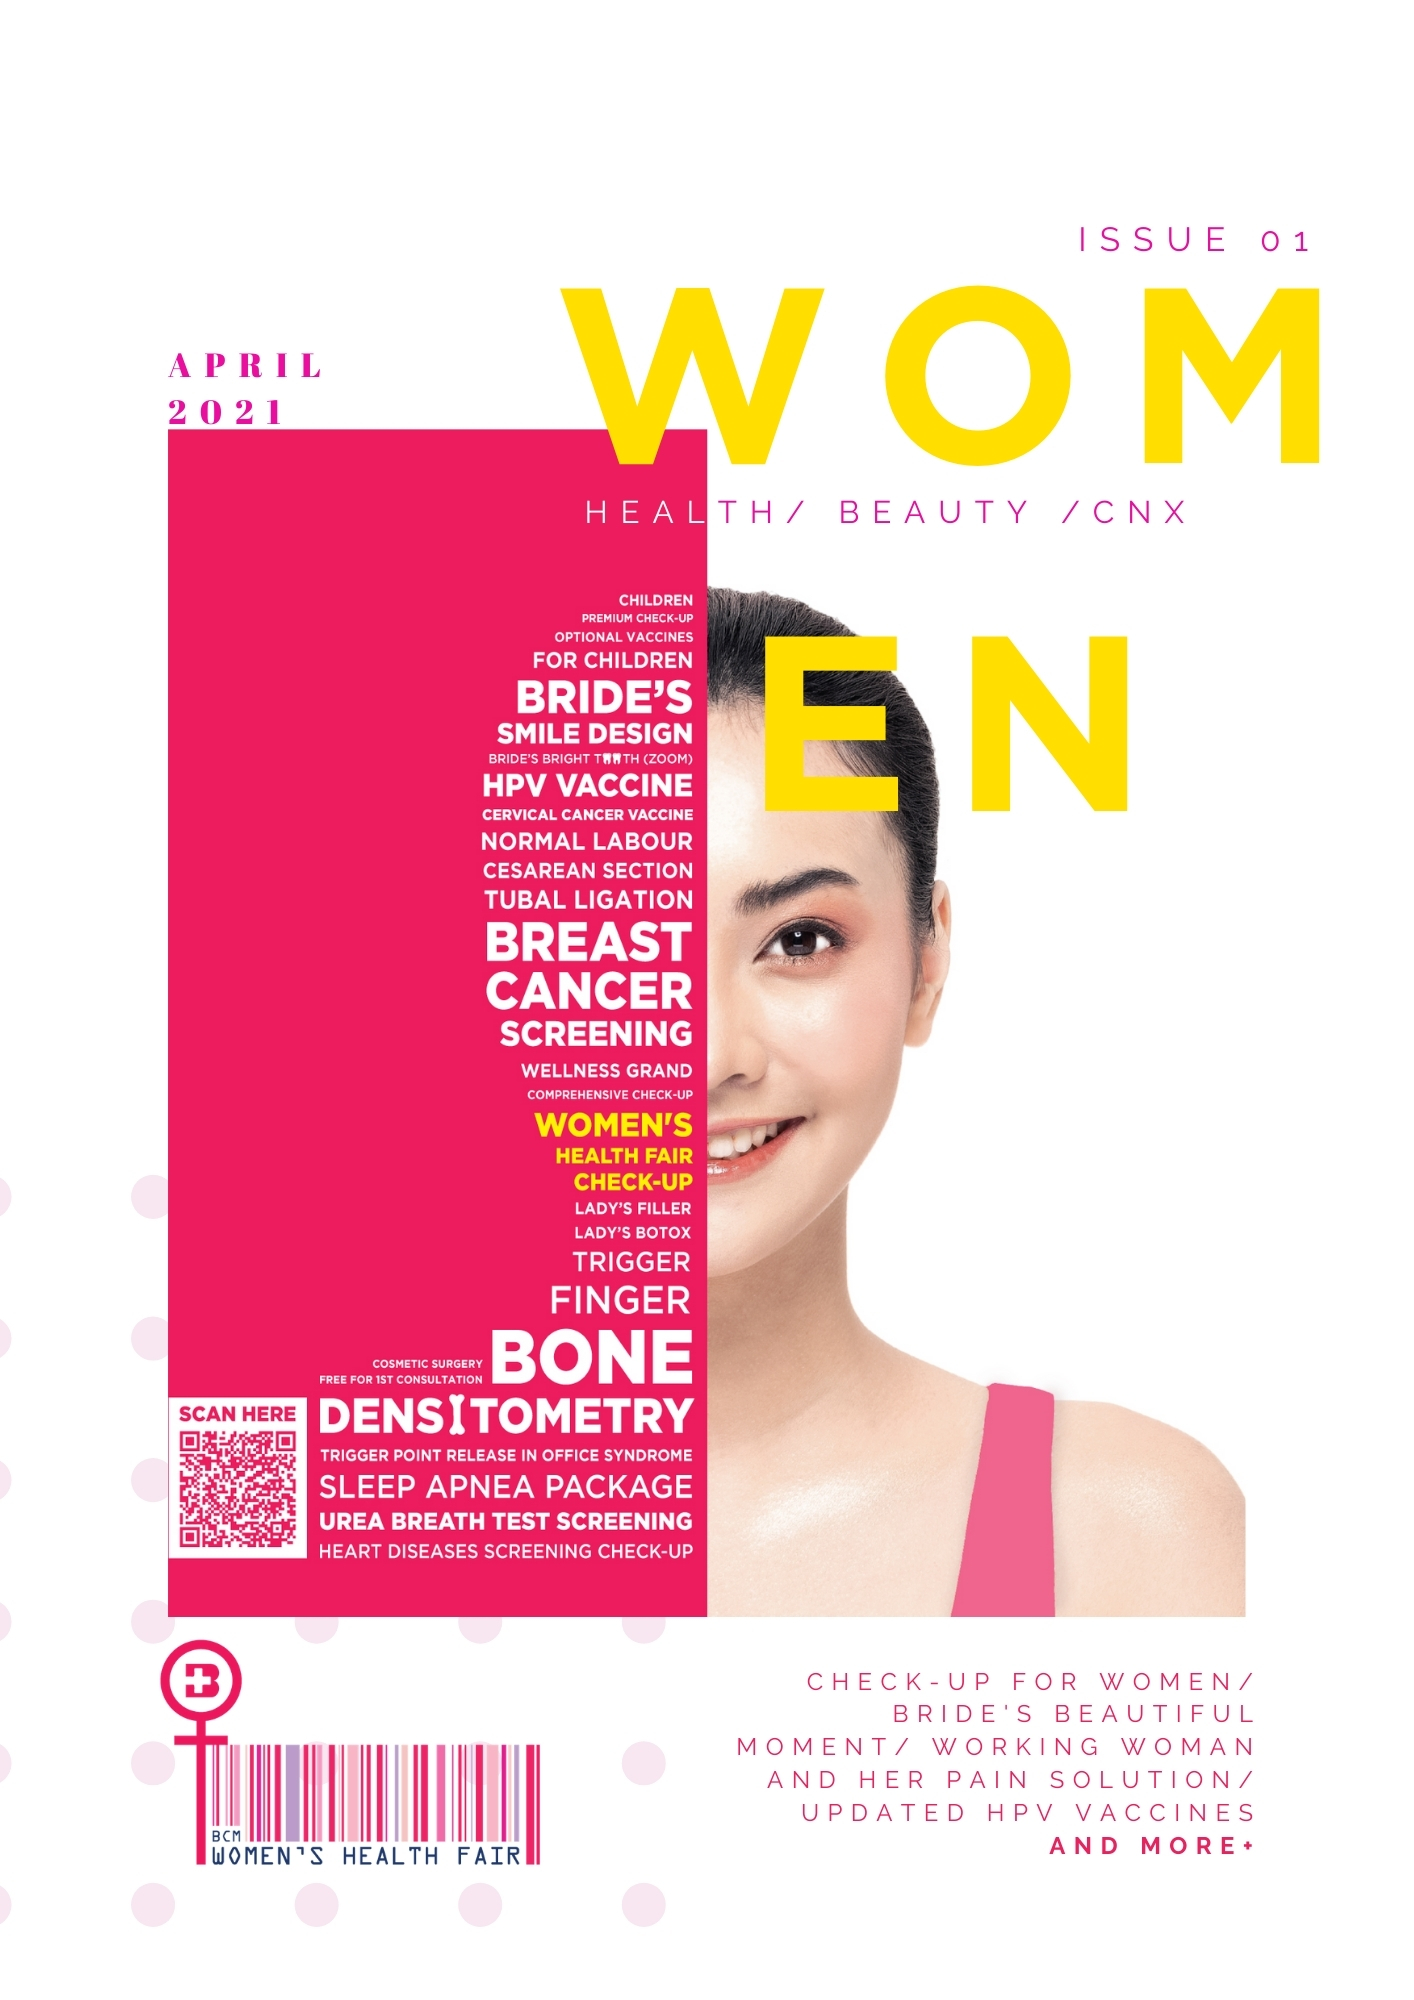 BCM Womens' Health Fair Magazine Vol.1